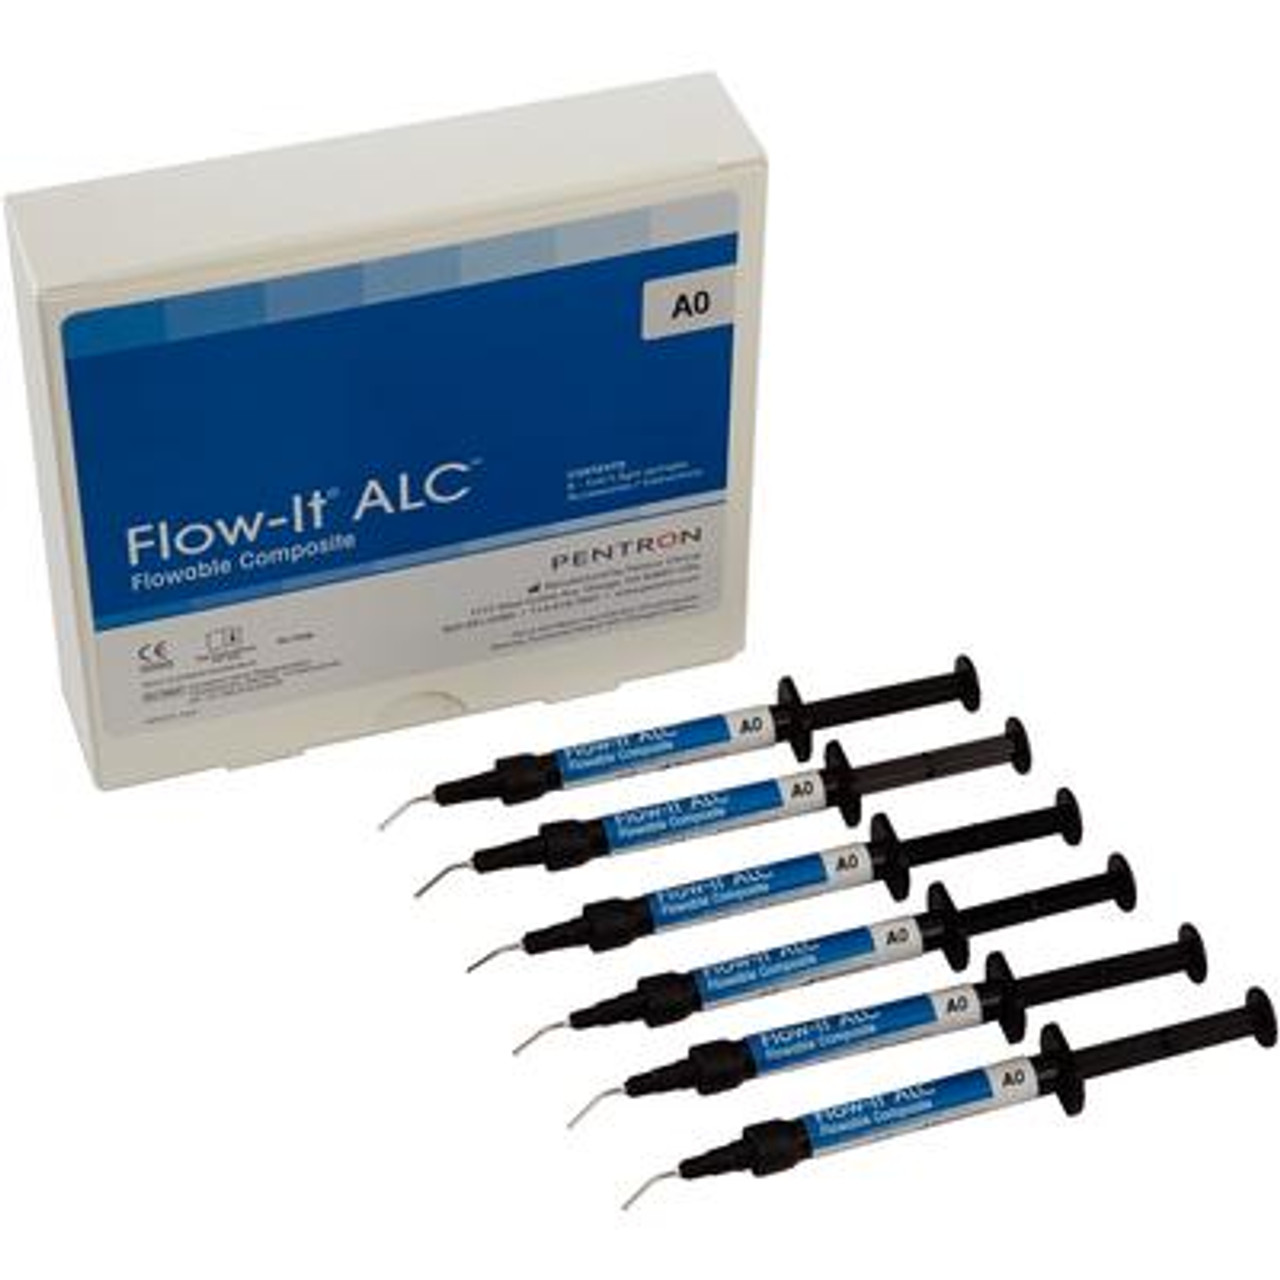 Pentron Flow-It ALC Flowable Composite A0 Value Pack Syringe 6x1.5g & Tips